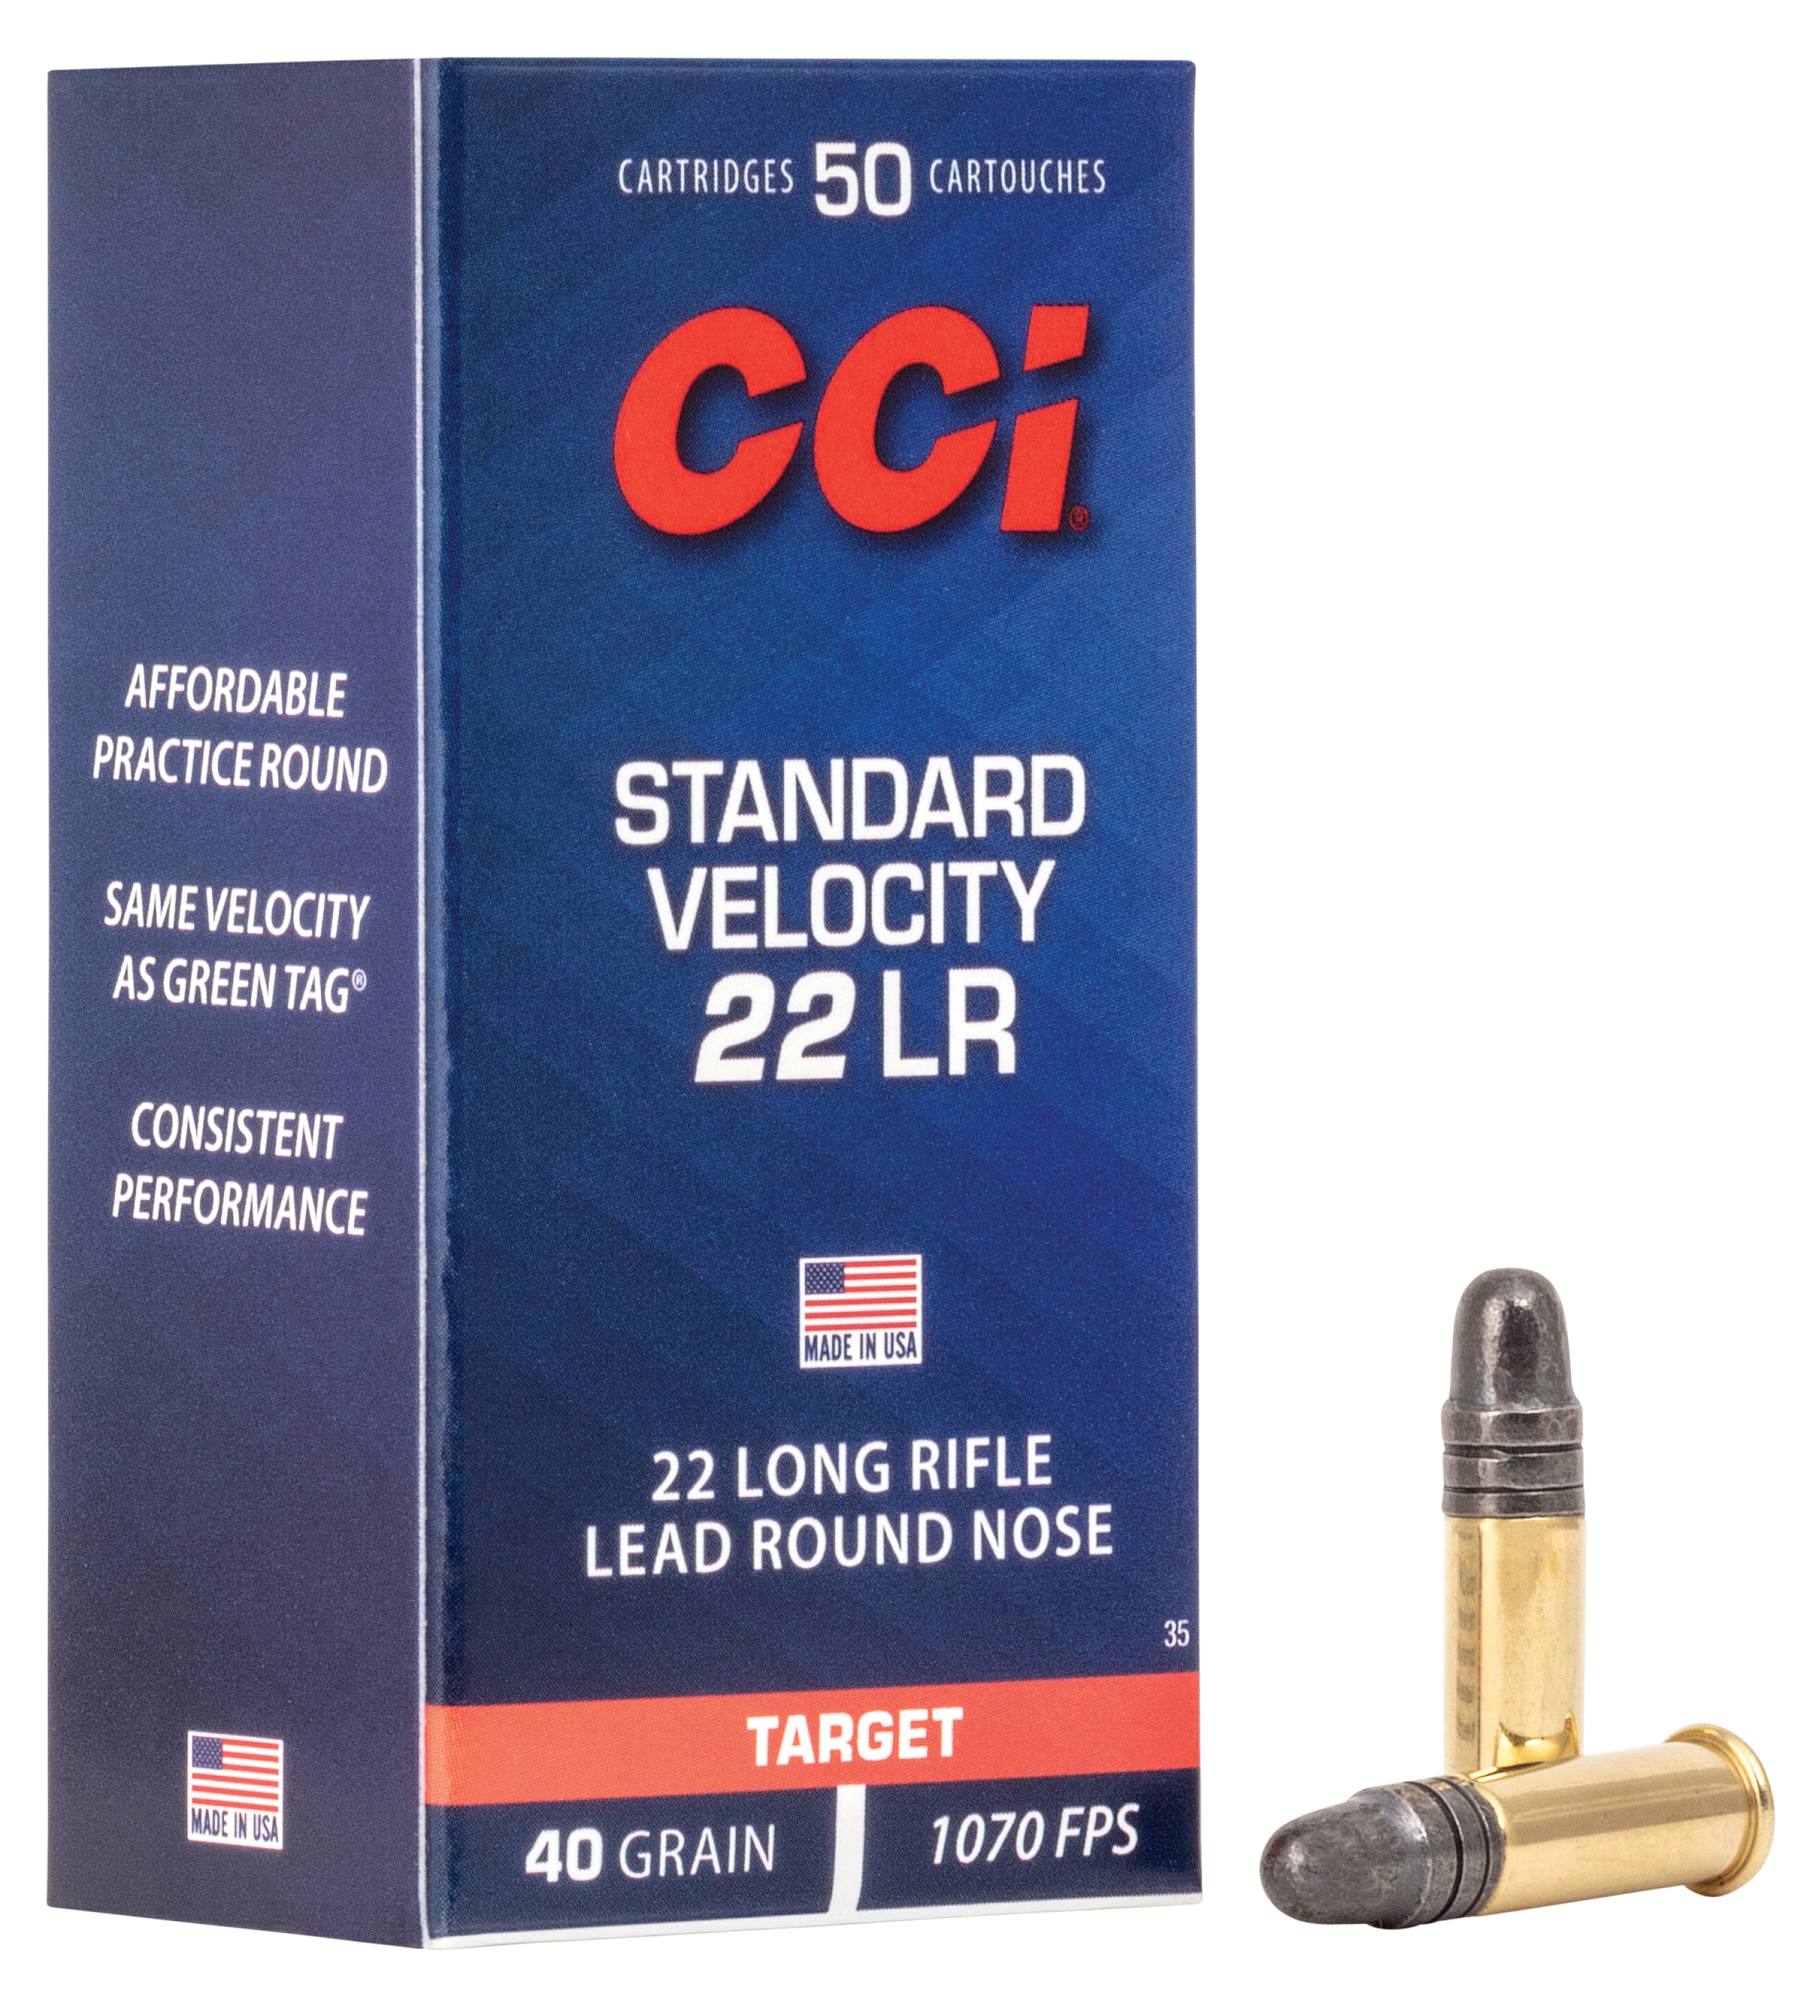 www.cci-ammunition.com